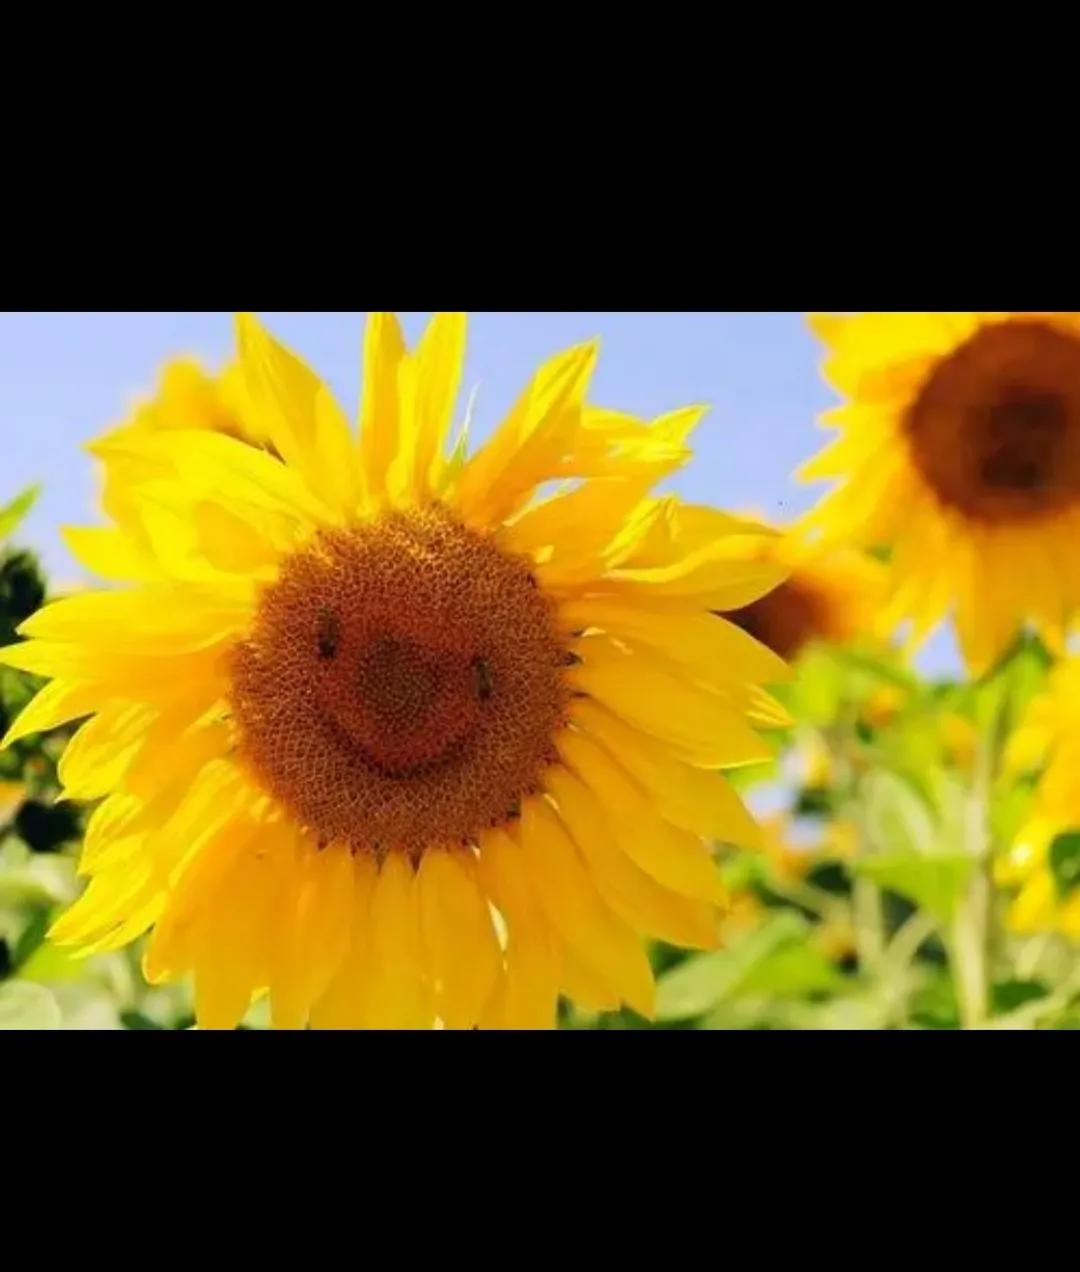 高清晰“微笑”的向日葵植物壁纸